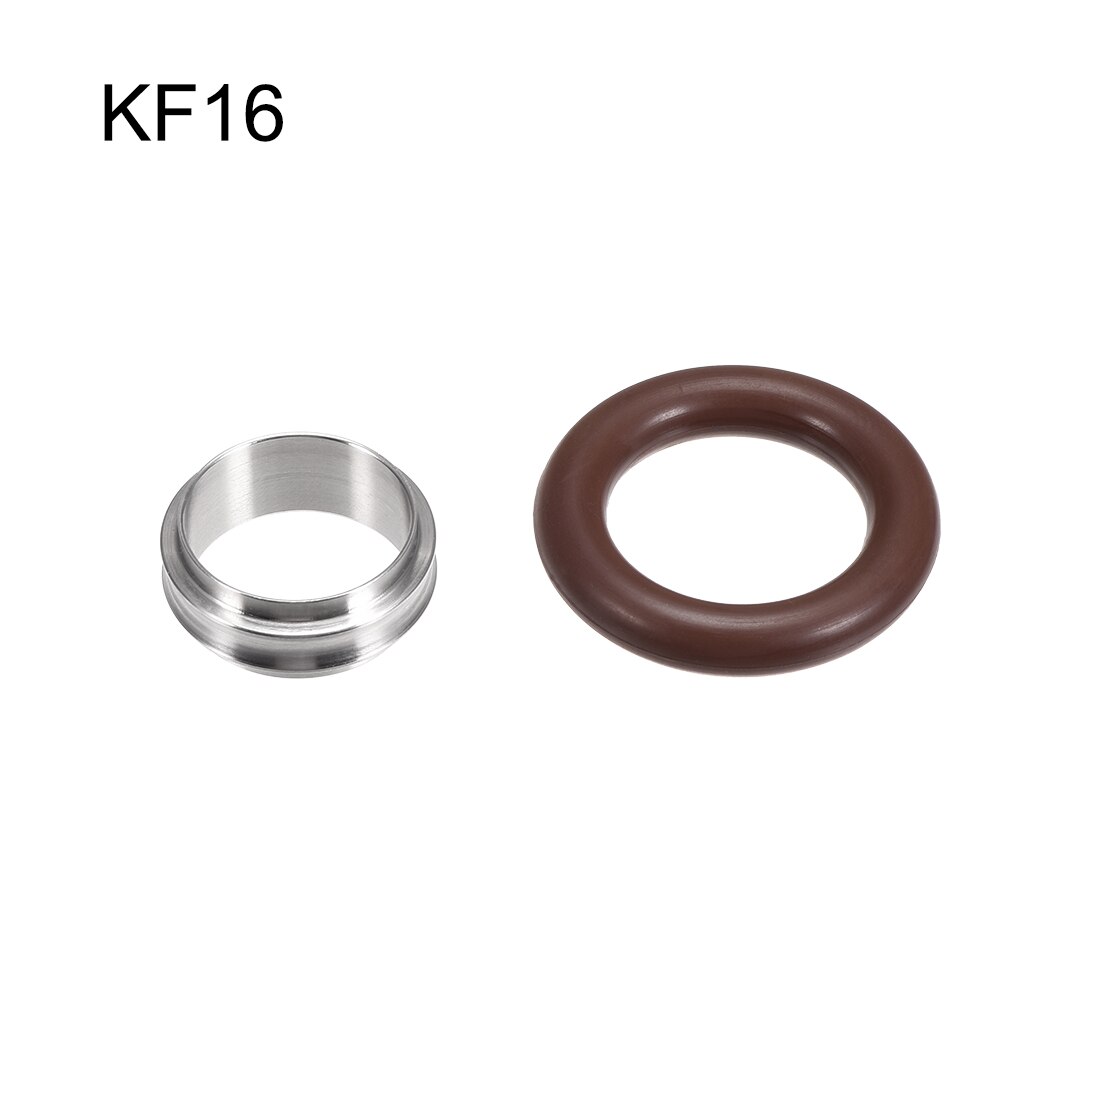 Uxcell 2 stk centreringsring kf -16 vakuumfittings iso-kf flange 29mm x 16mm rustfrit stål fluorgummi o-ring